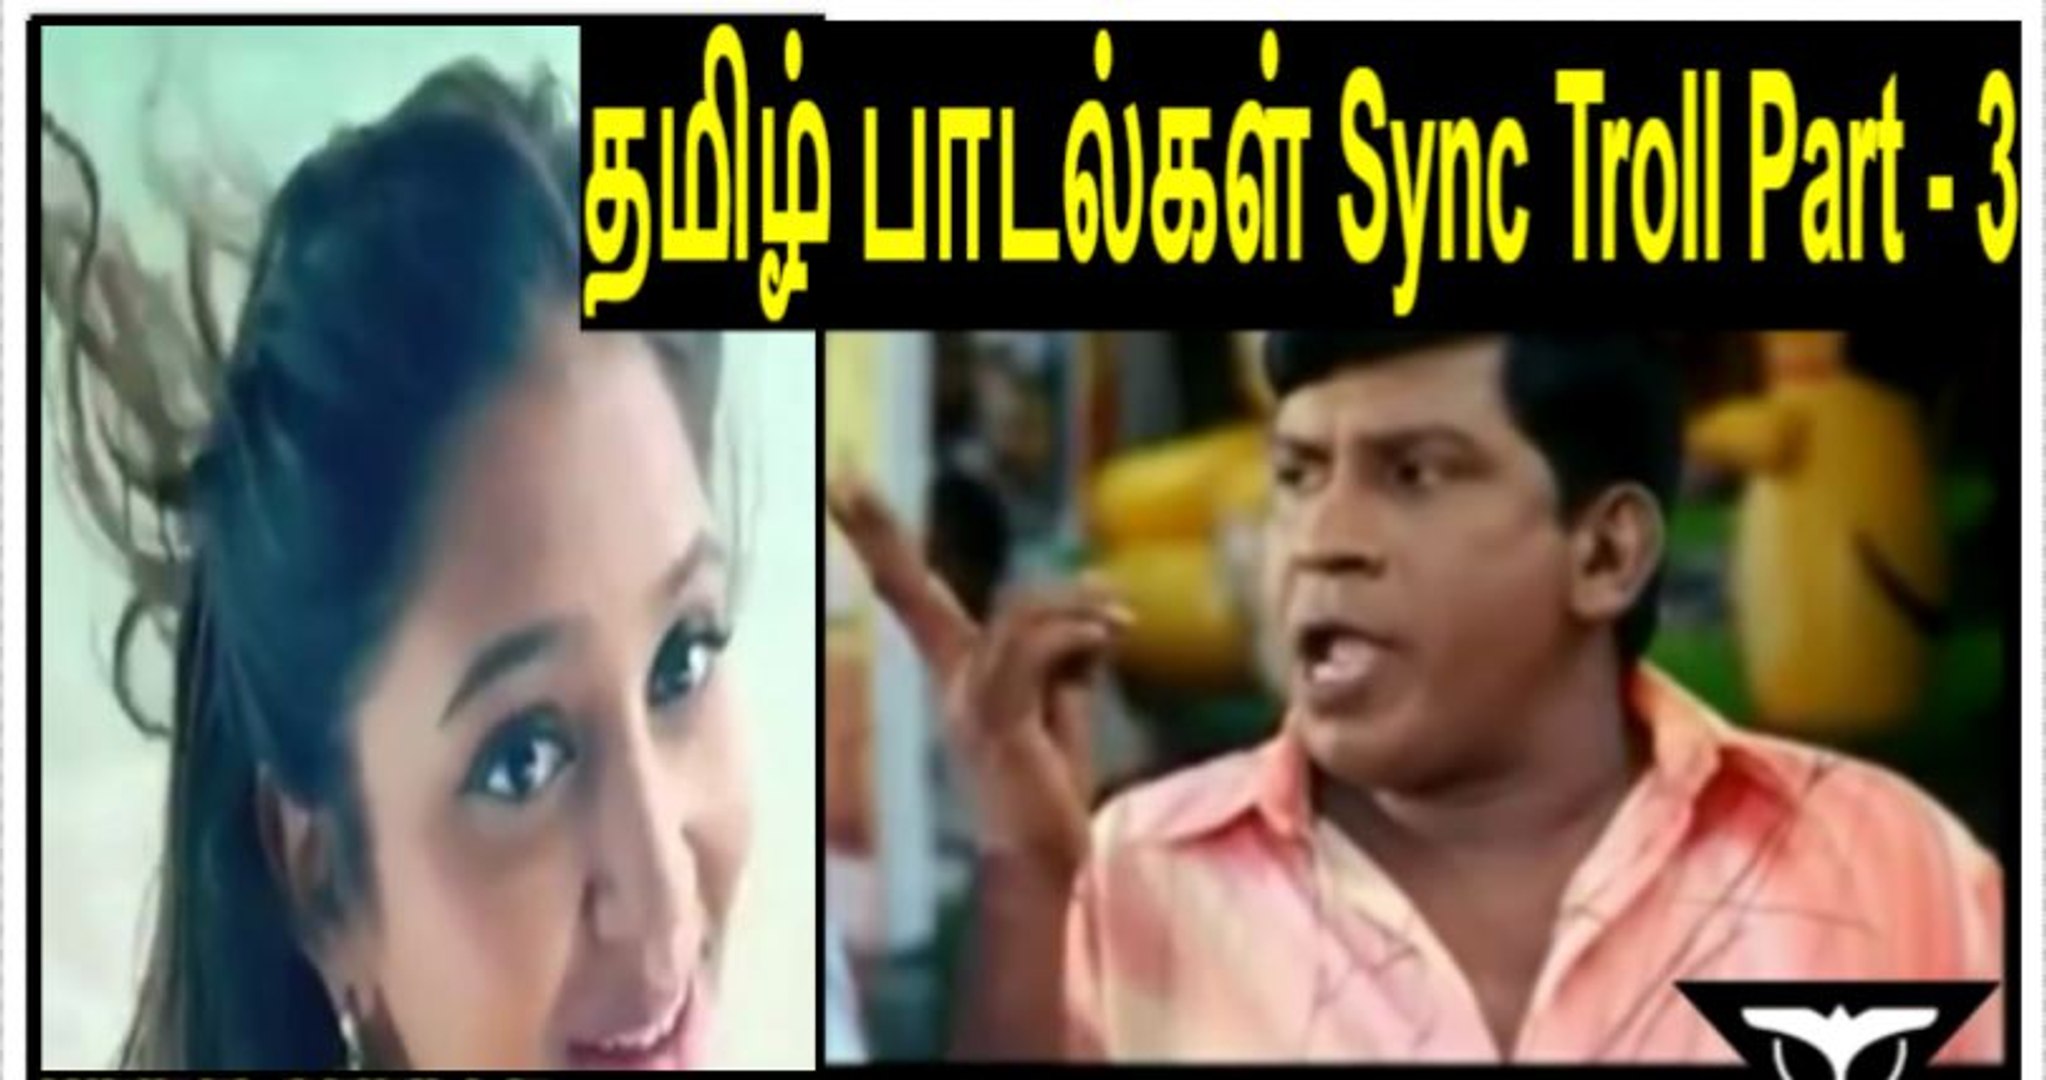 தமிழ் பாடல்கள் Sync Troll Part - 3 | Tamil Song Lyrics Troll | Tamil Memes  - video Dailymotion